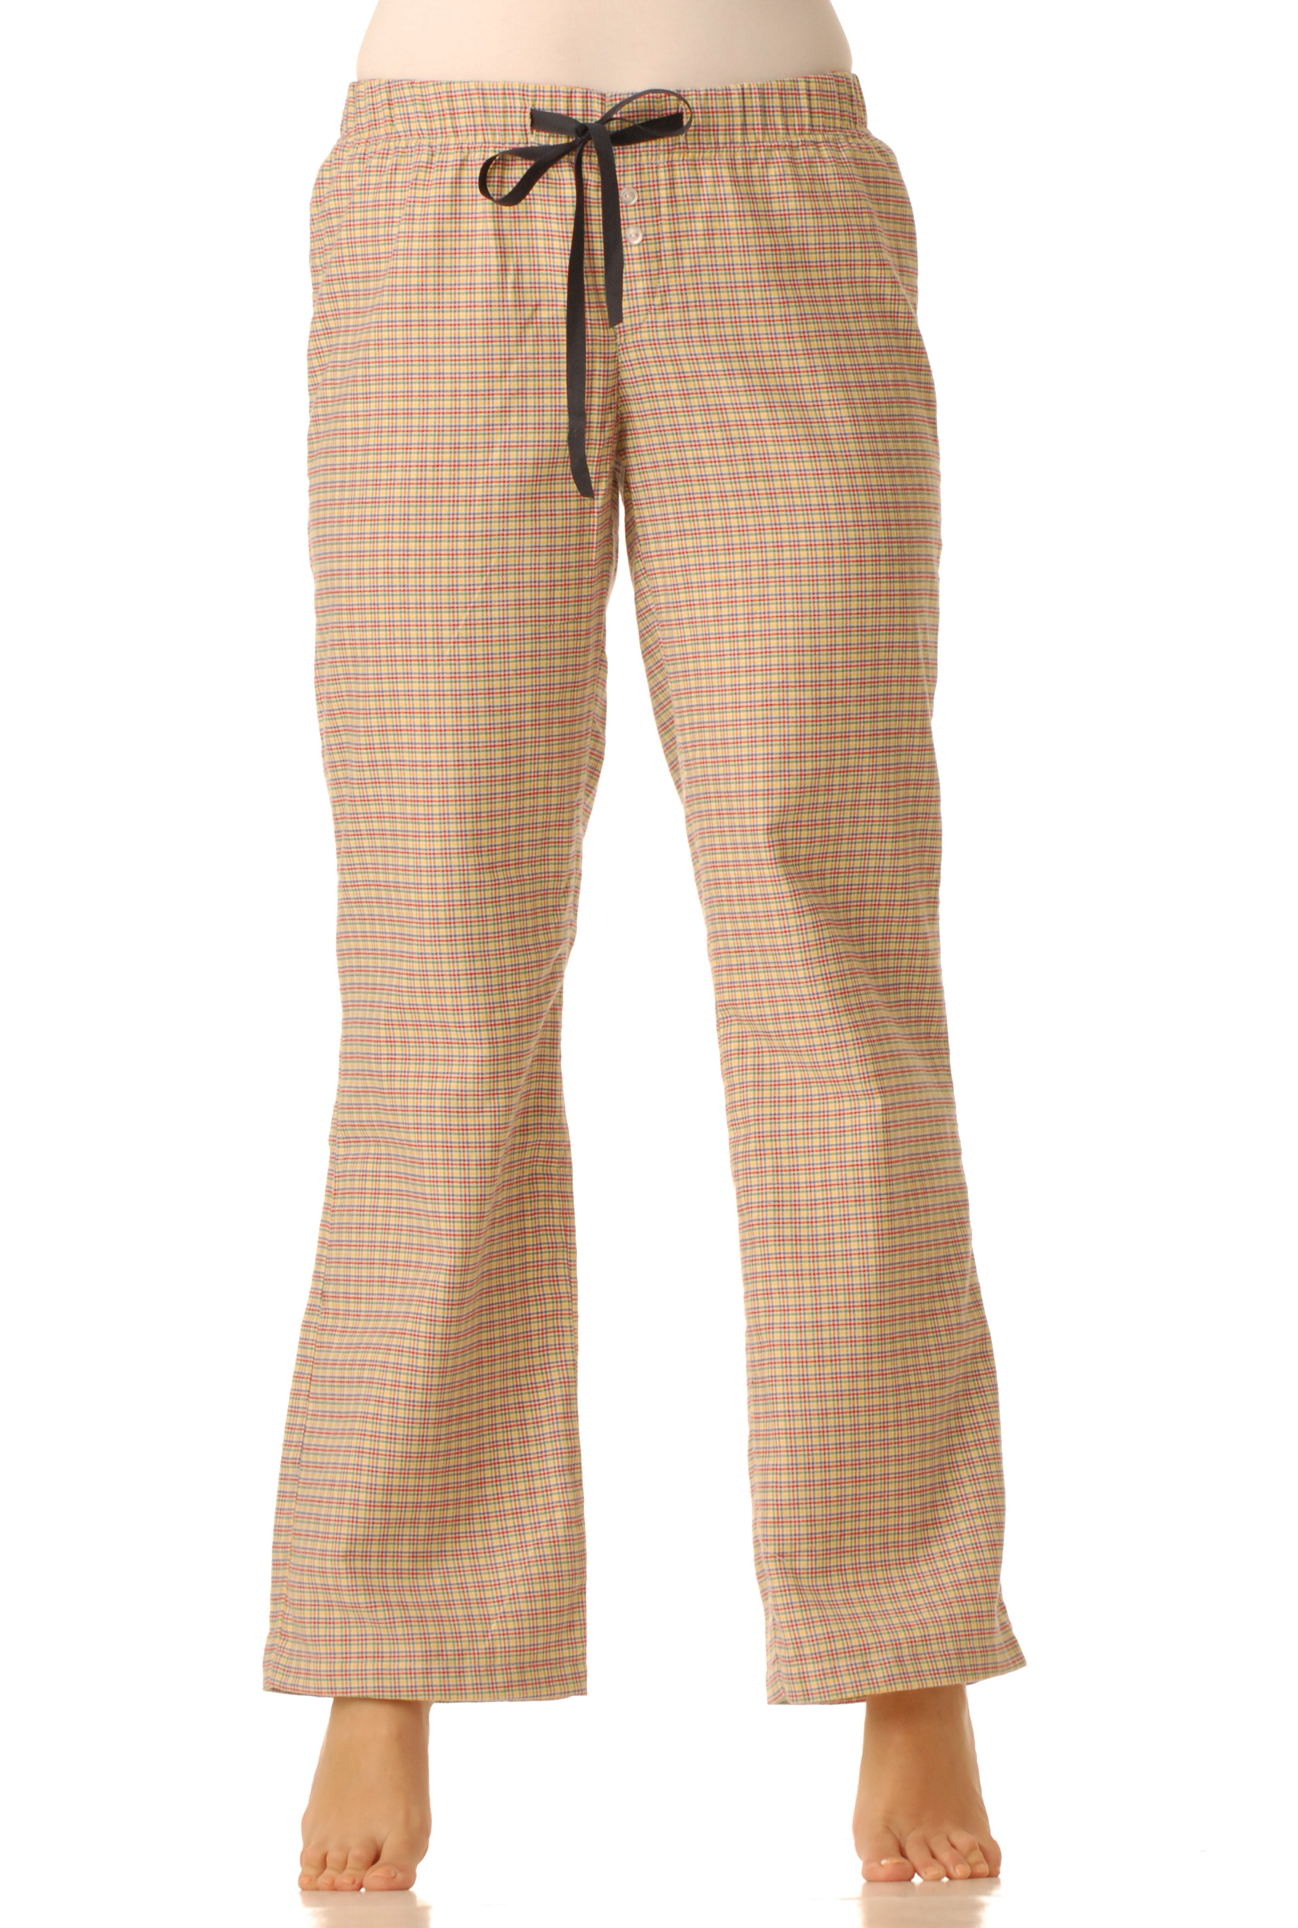 Flanelové pyžamové kalhoty - Barevná kostka